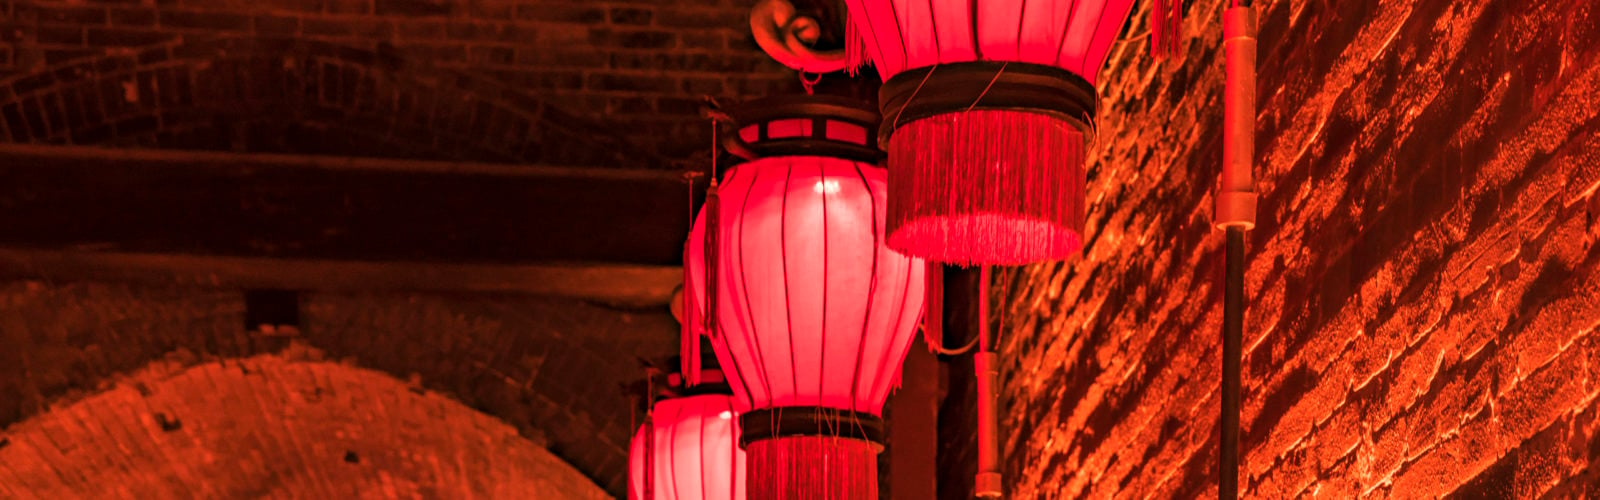 chinese-lantern-xi-an-shanxi-china